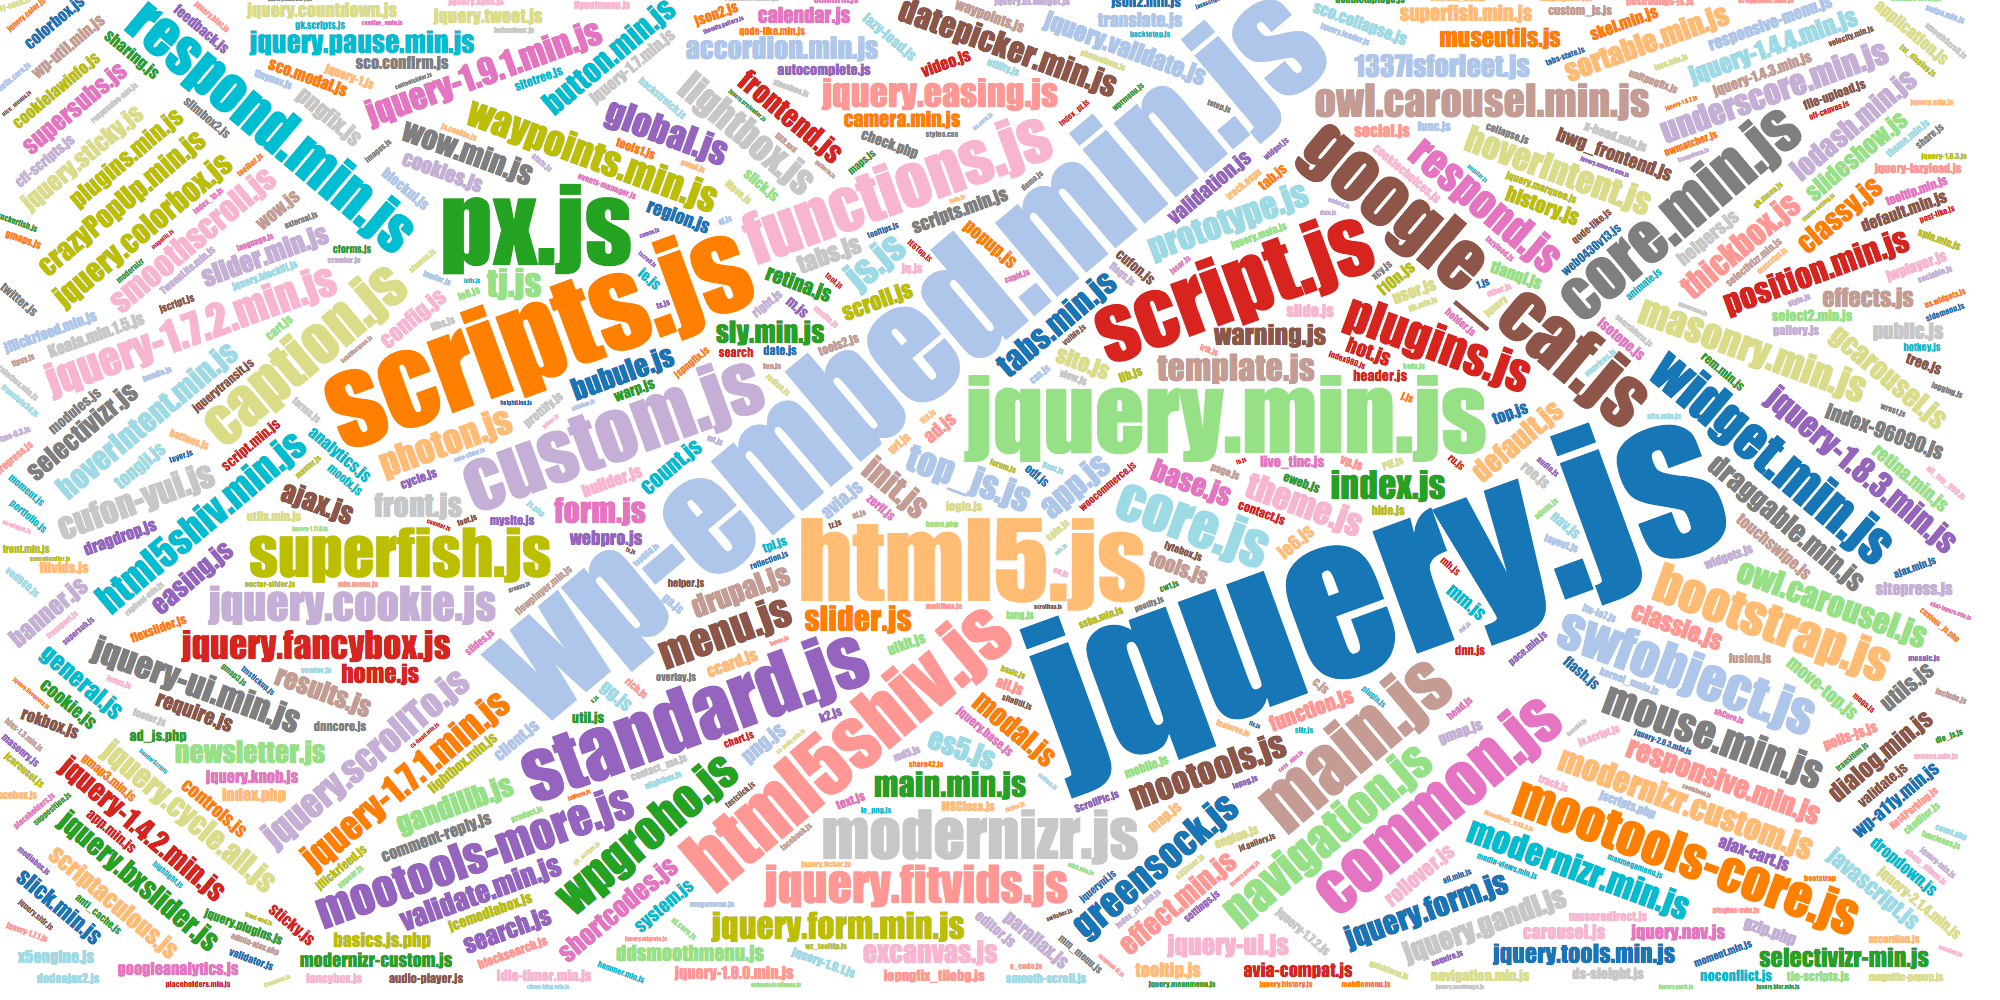 Popular names of JS files owl.carousel.min.js, owl.carousel.js, etc.